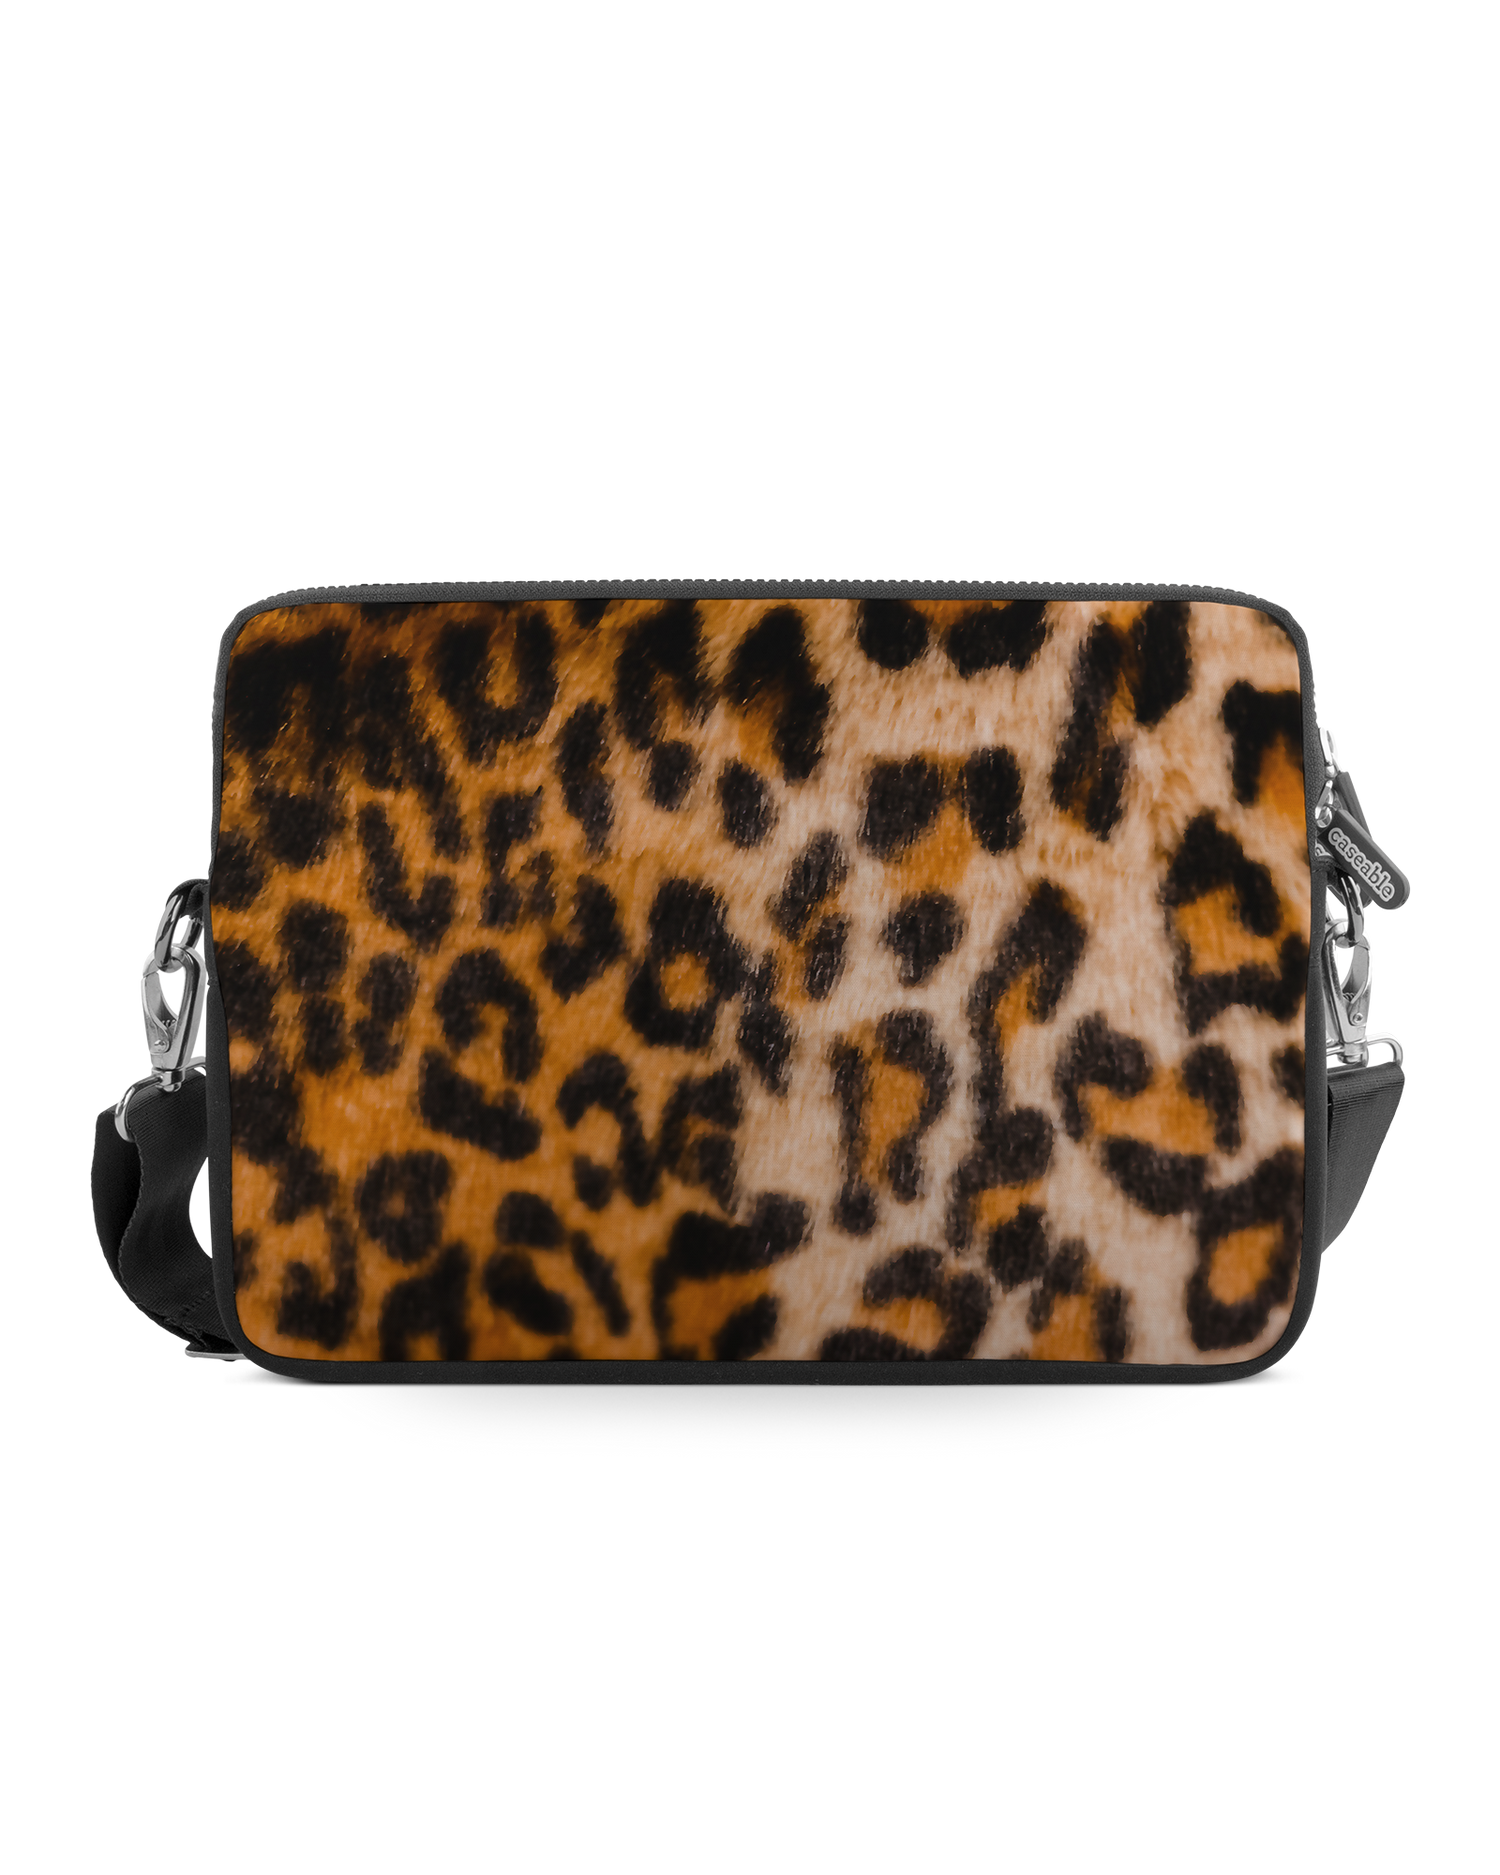 Leopard Pattern Premium Laptop Bag 13-14 inch: Front View